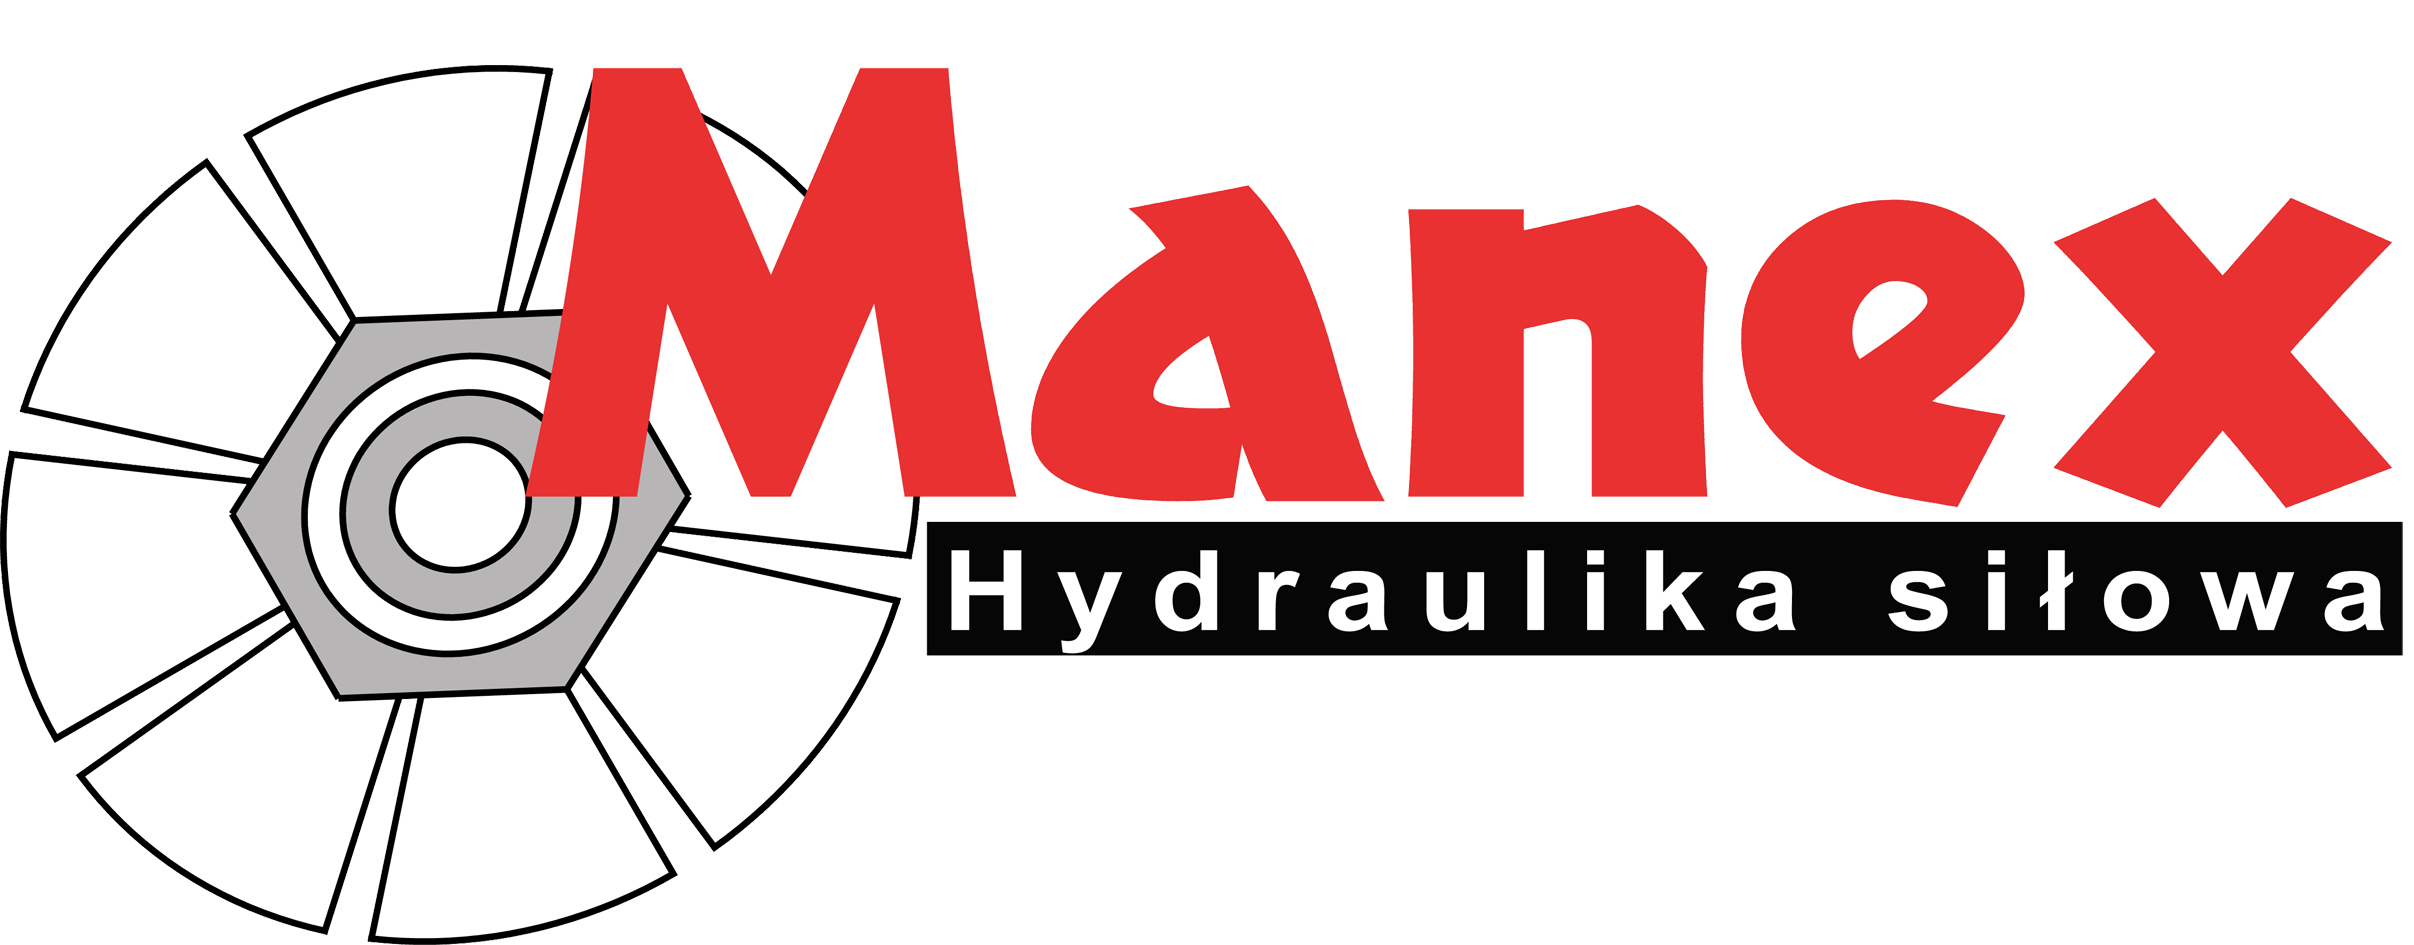 Manex hydraulika siłowa